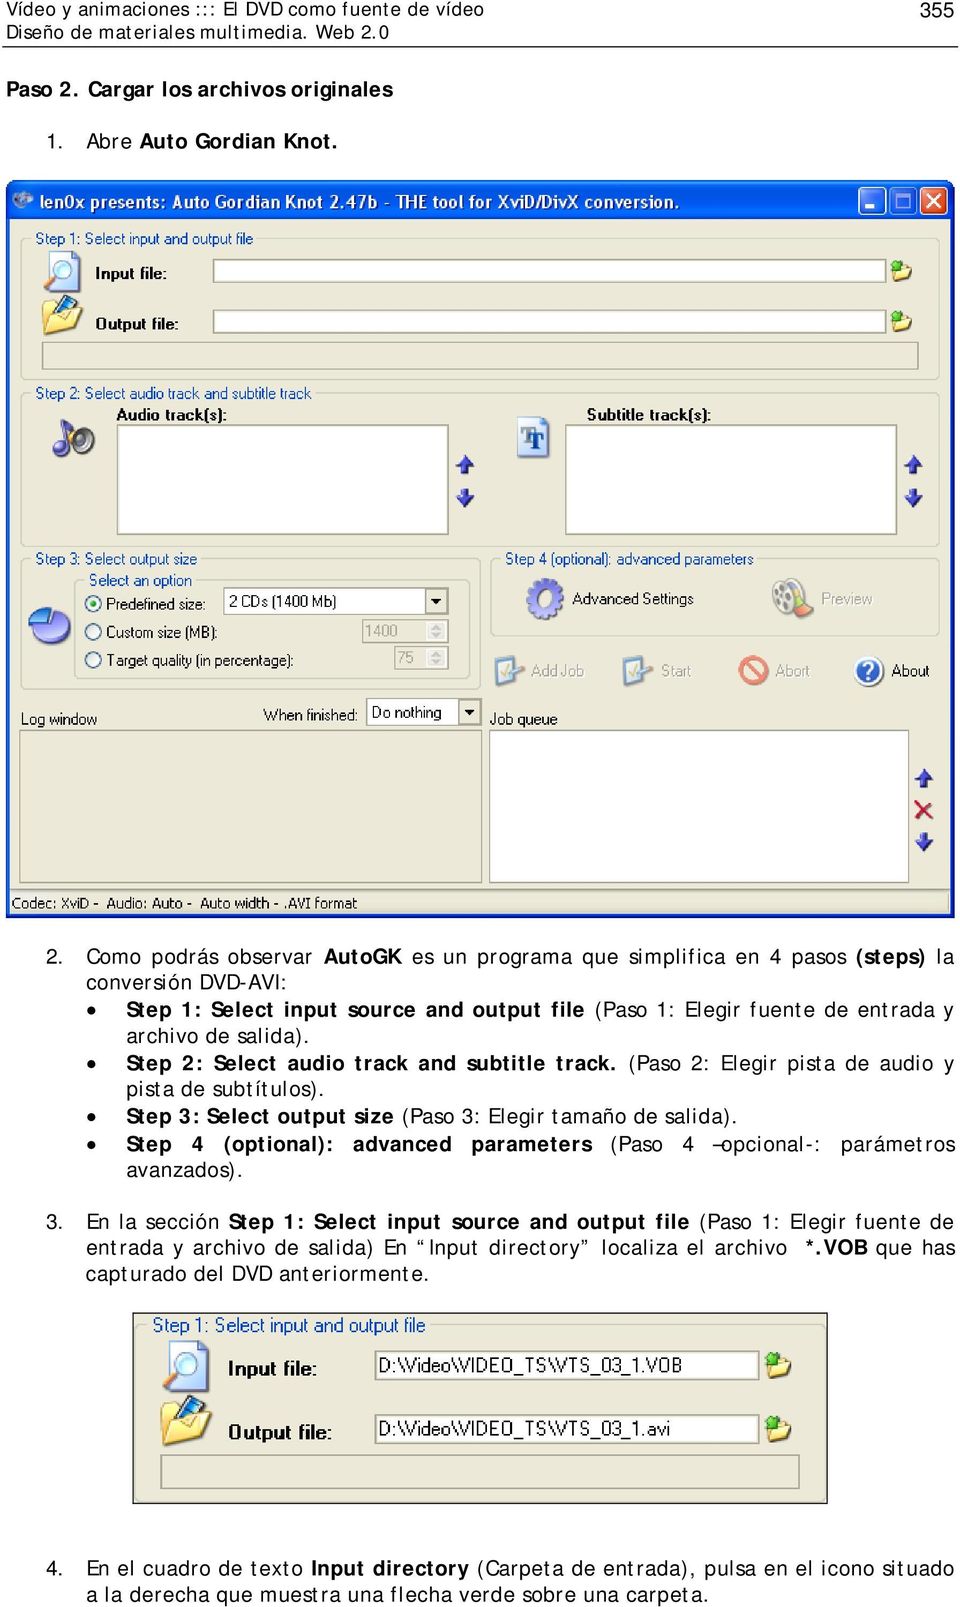 Como podrás observar AutoGK es un programa que simplifica en 4 pasos (steps) la conversión DVD-AVI: Step 1: Select input source and output file (Paso 1: Elegir fuente de entrada y archivo de salida).